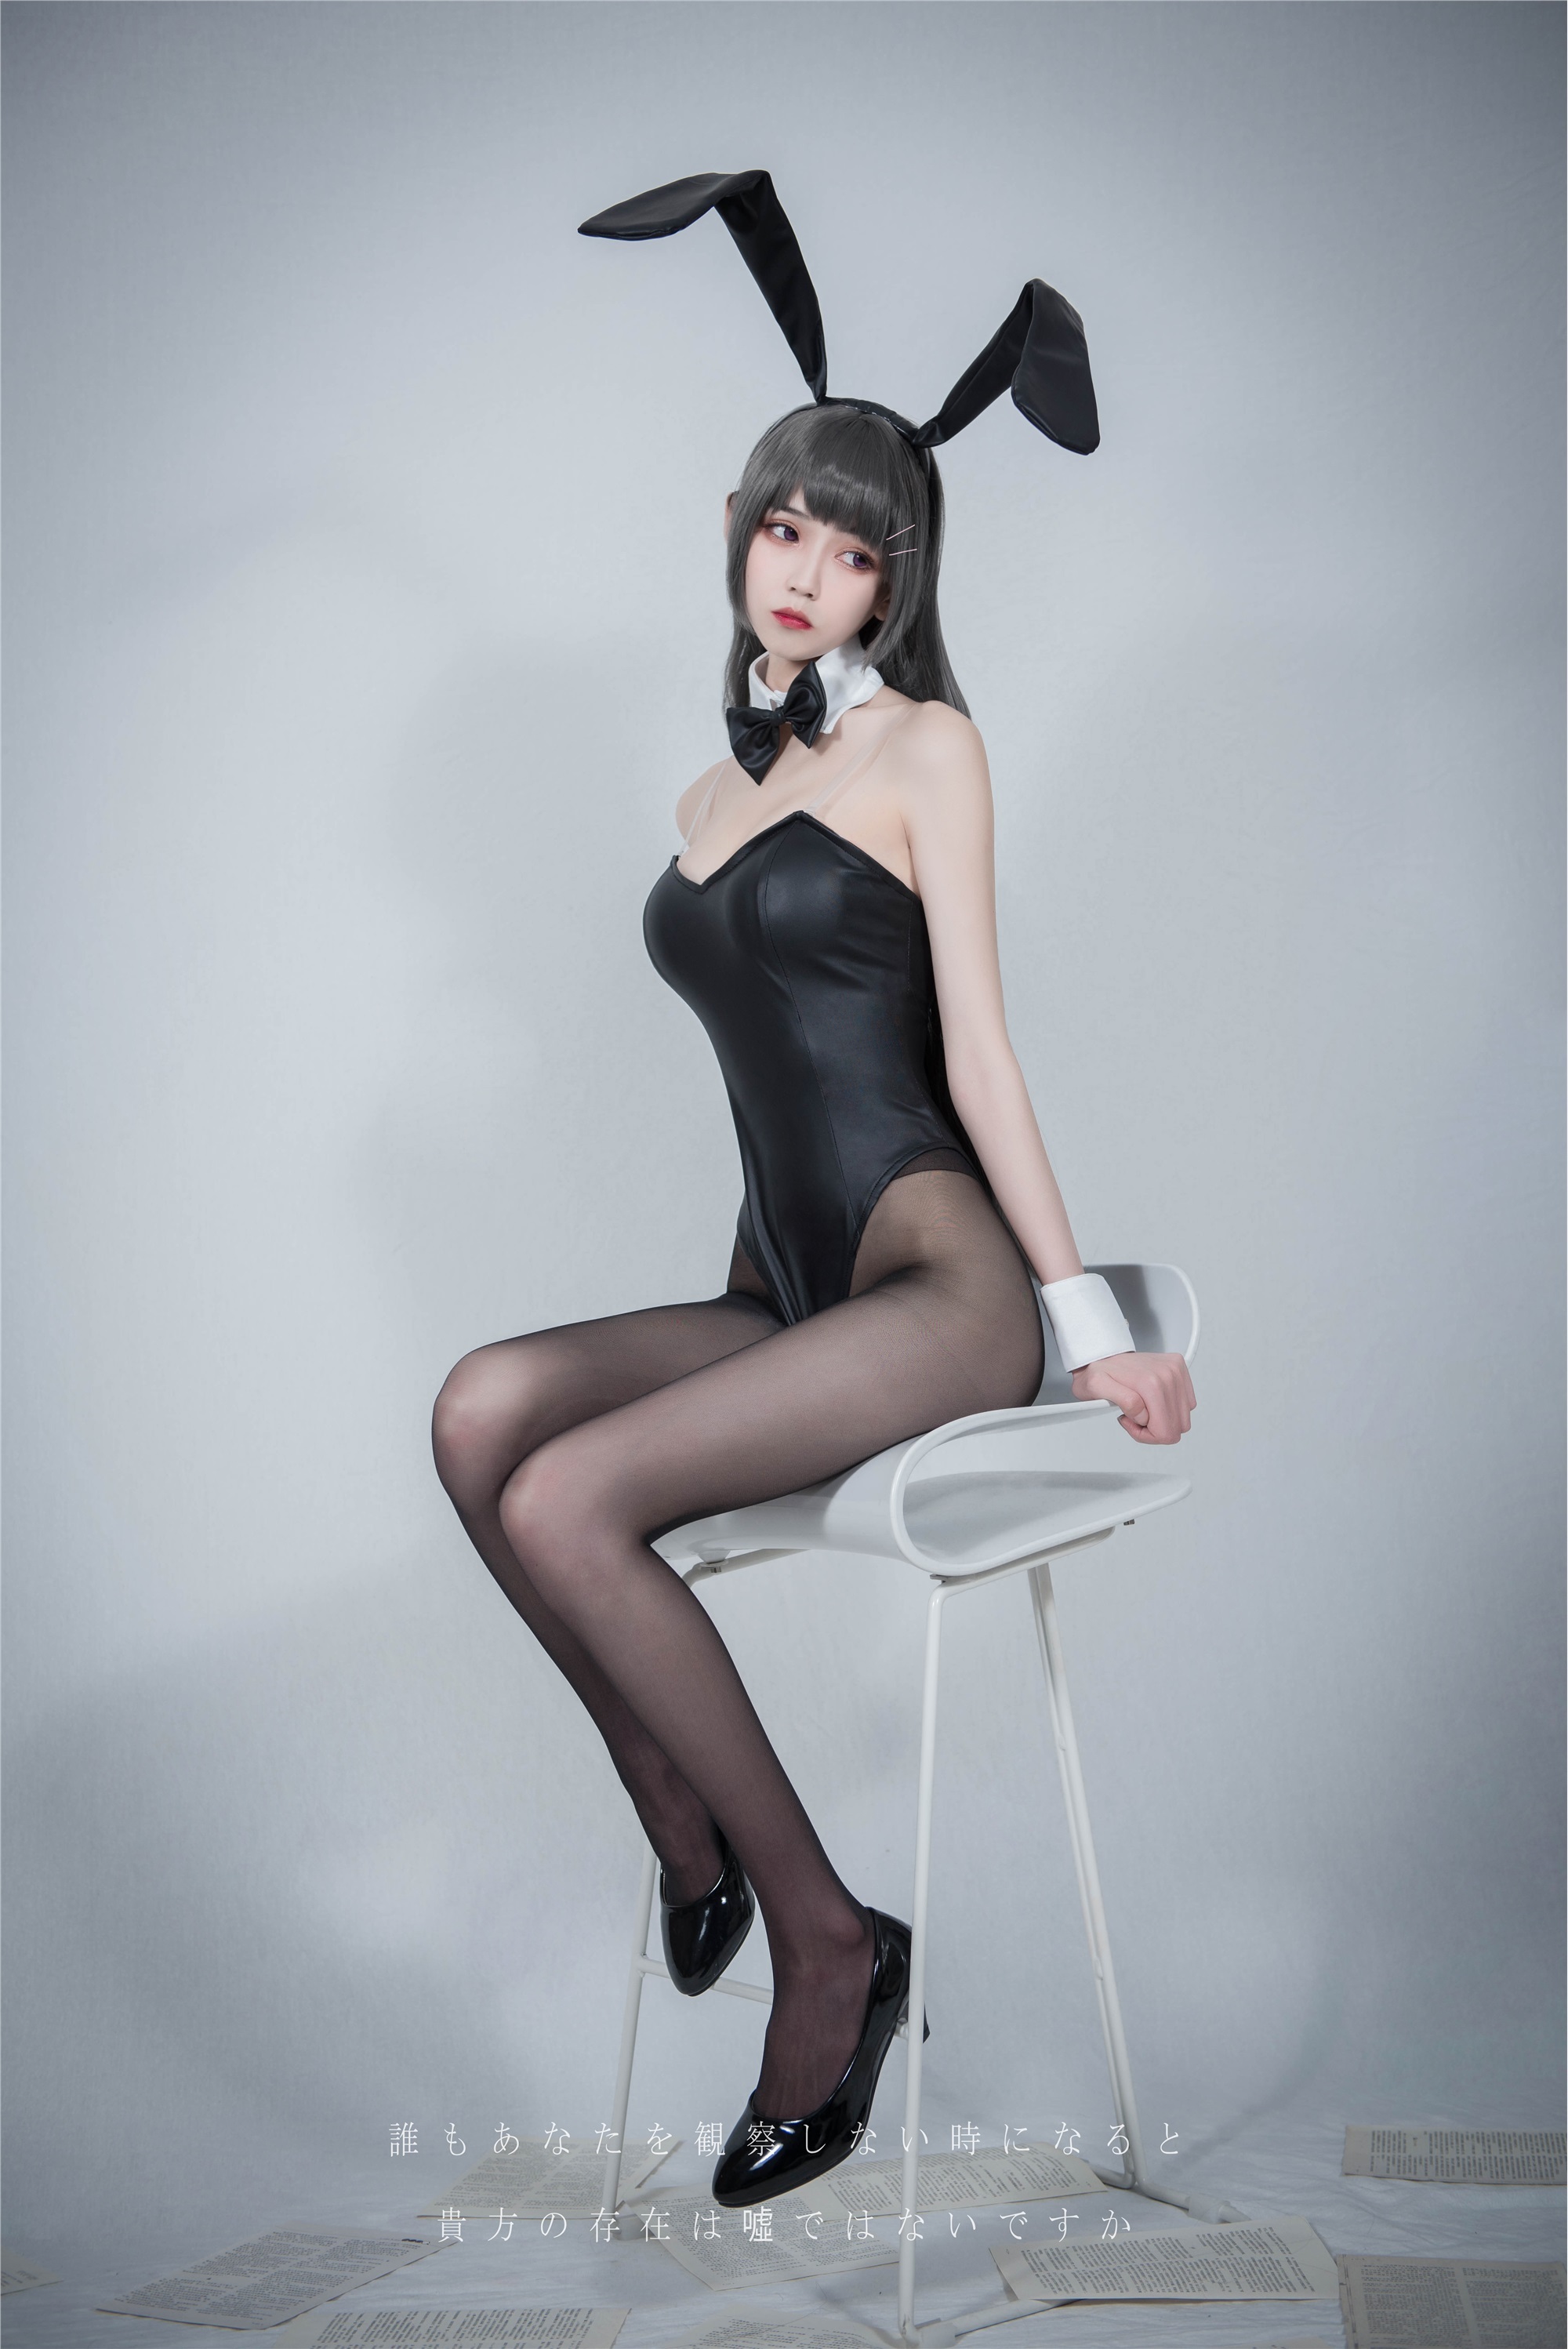 Your daughter, Xuejie Bunny